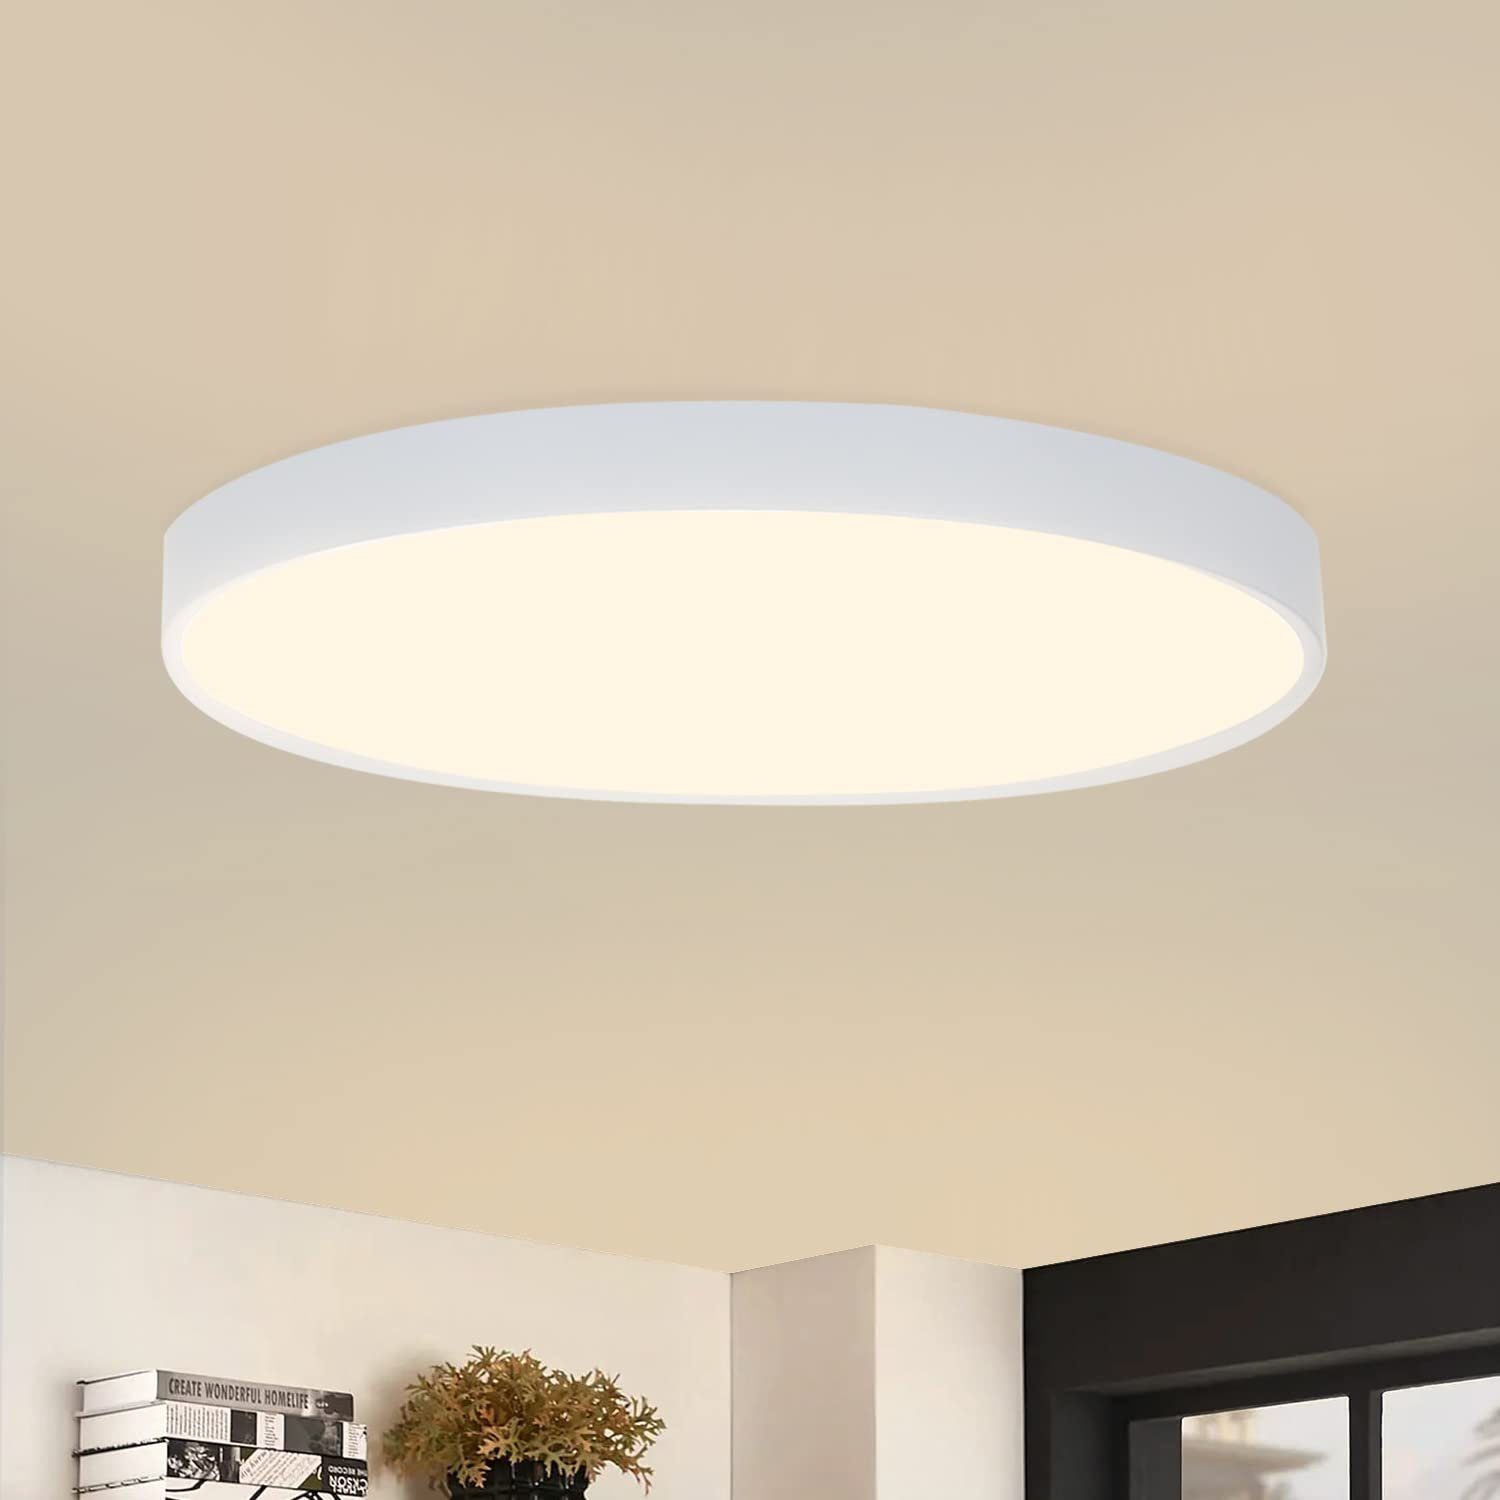 Weiß Warmweiß, dimmbar), Warmweiß IP44 Küchenlampe, fest integriert, Deckenleuchte Warmweiß Badlampe Flach (nicht ZMH weiß LED Wasserdicht Rund LED